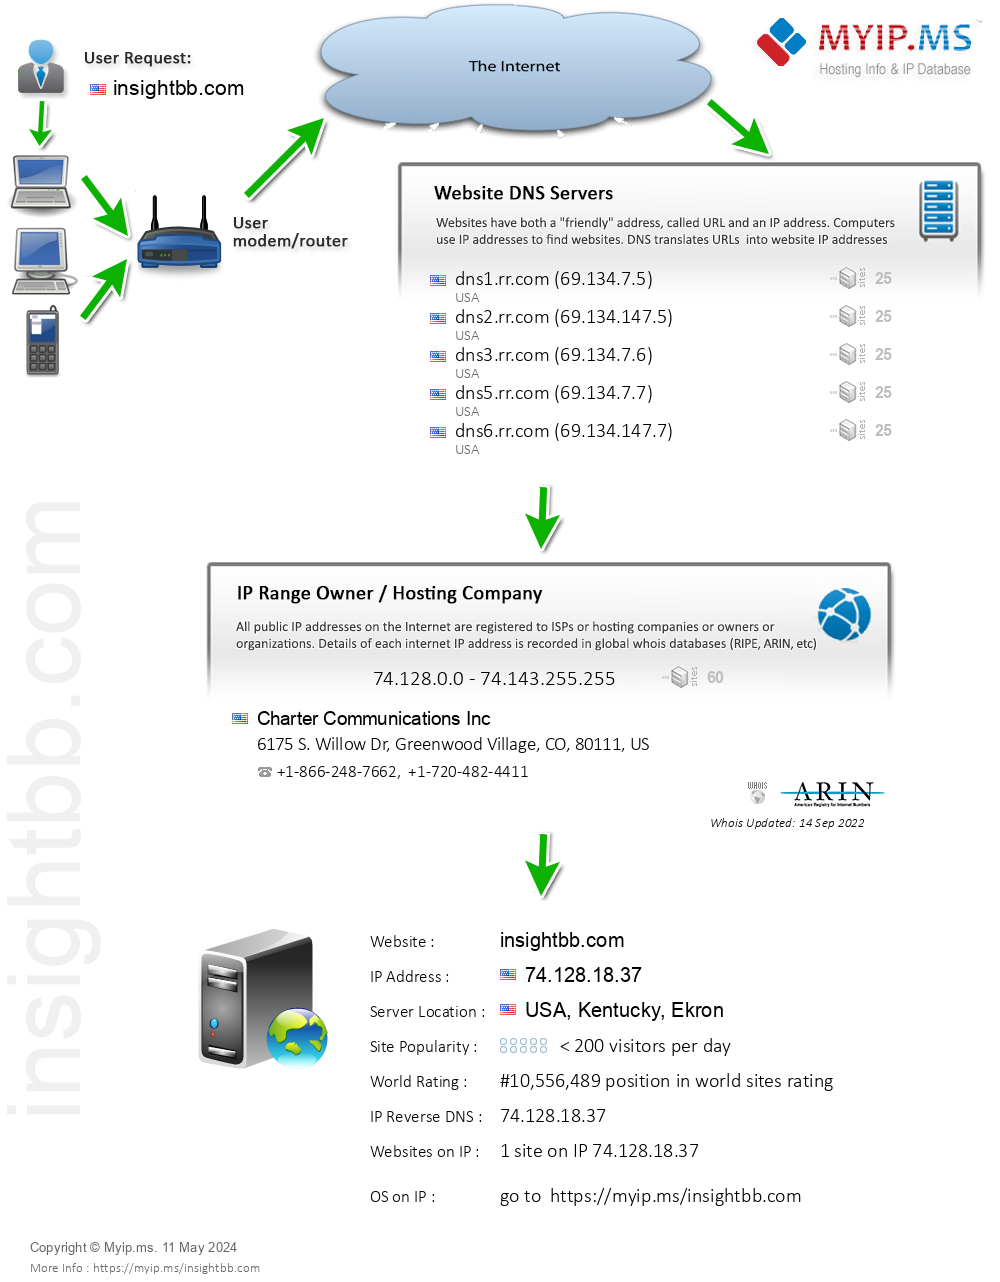 Insightbb.com - Website Hosting Visual IP Diagram